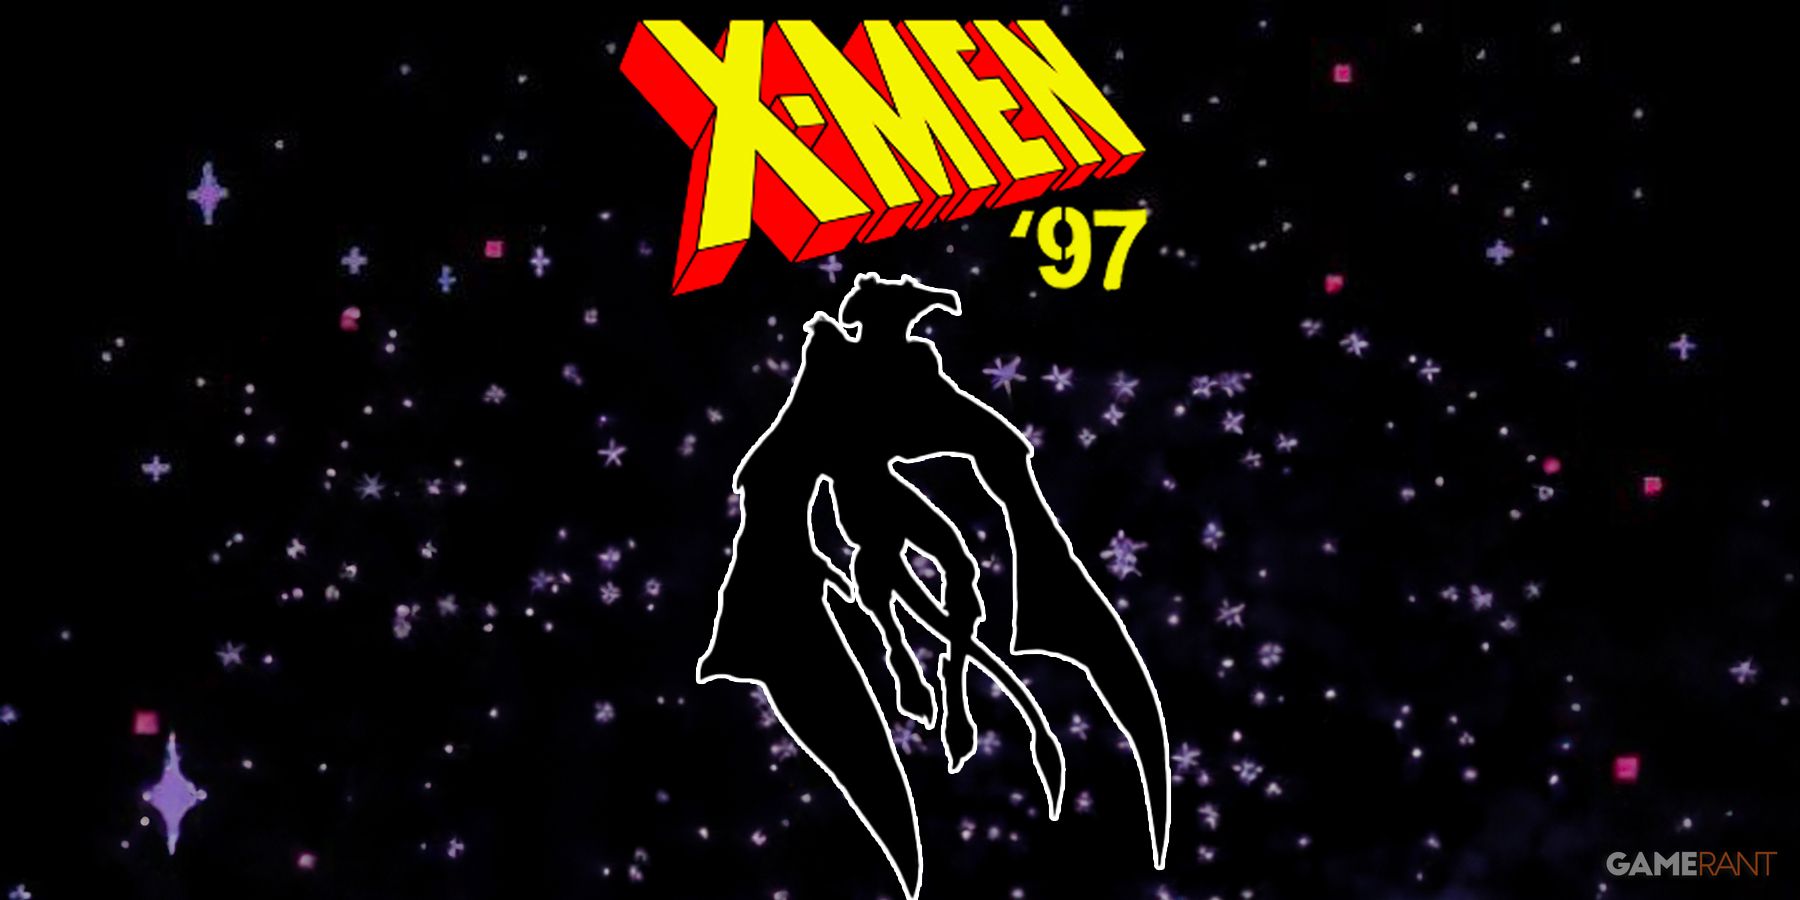 X-Men 97 Video Game Episode Characters Funko Pop Figures